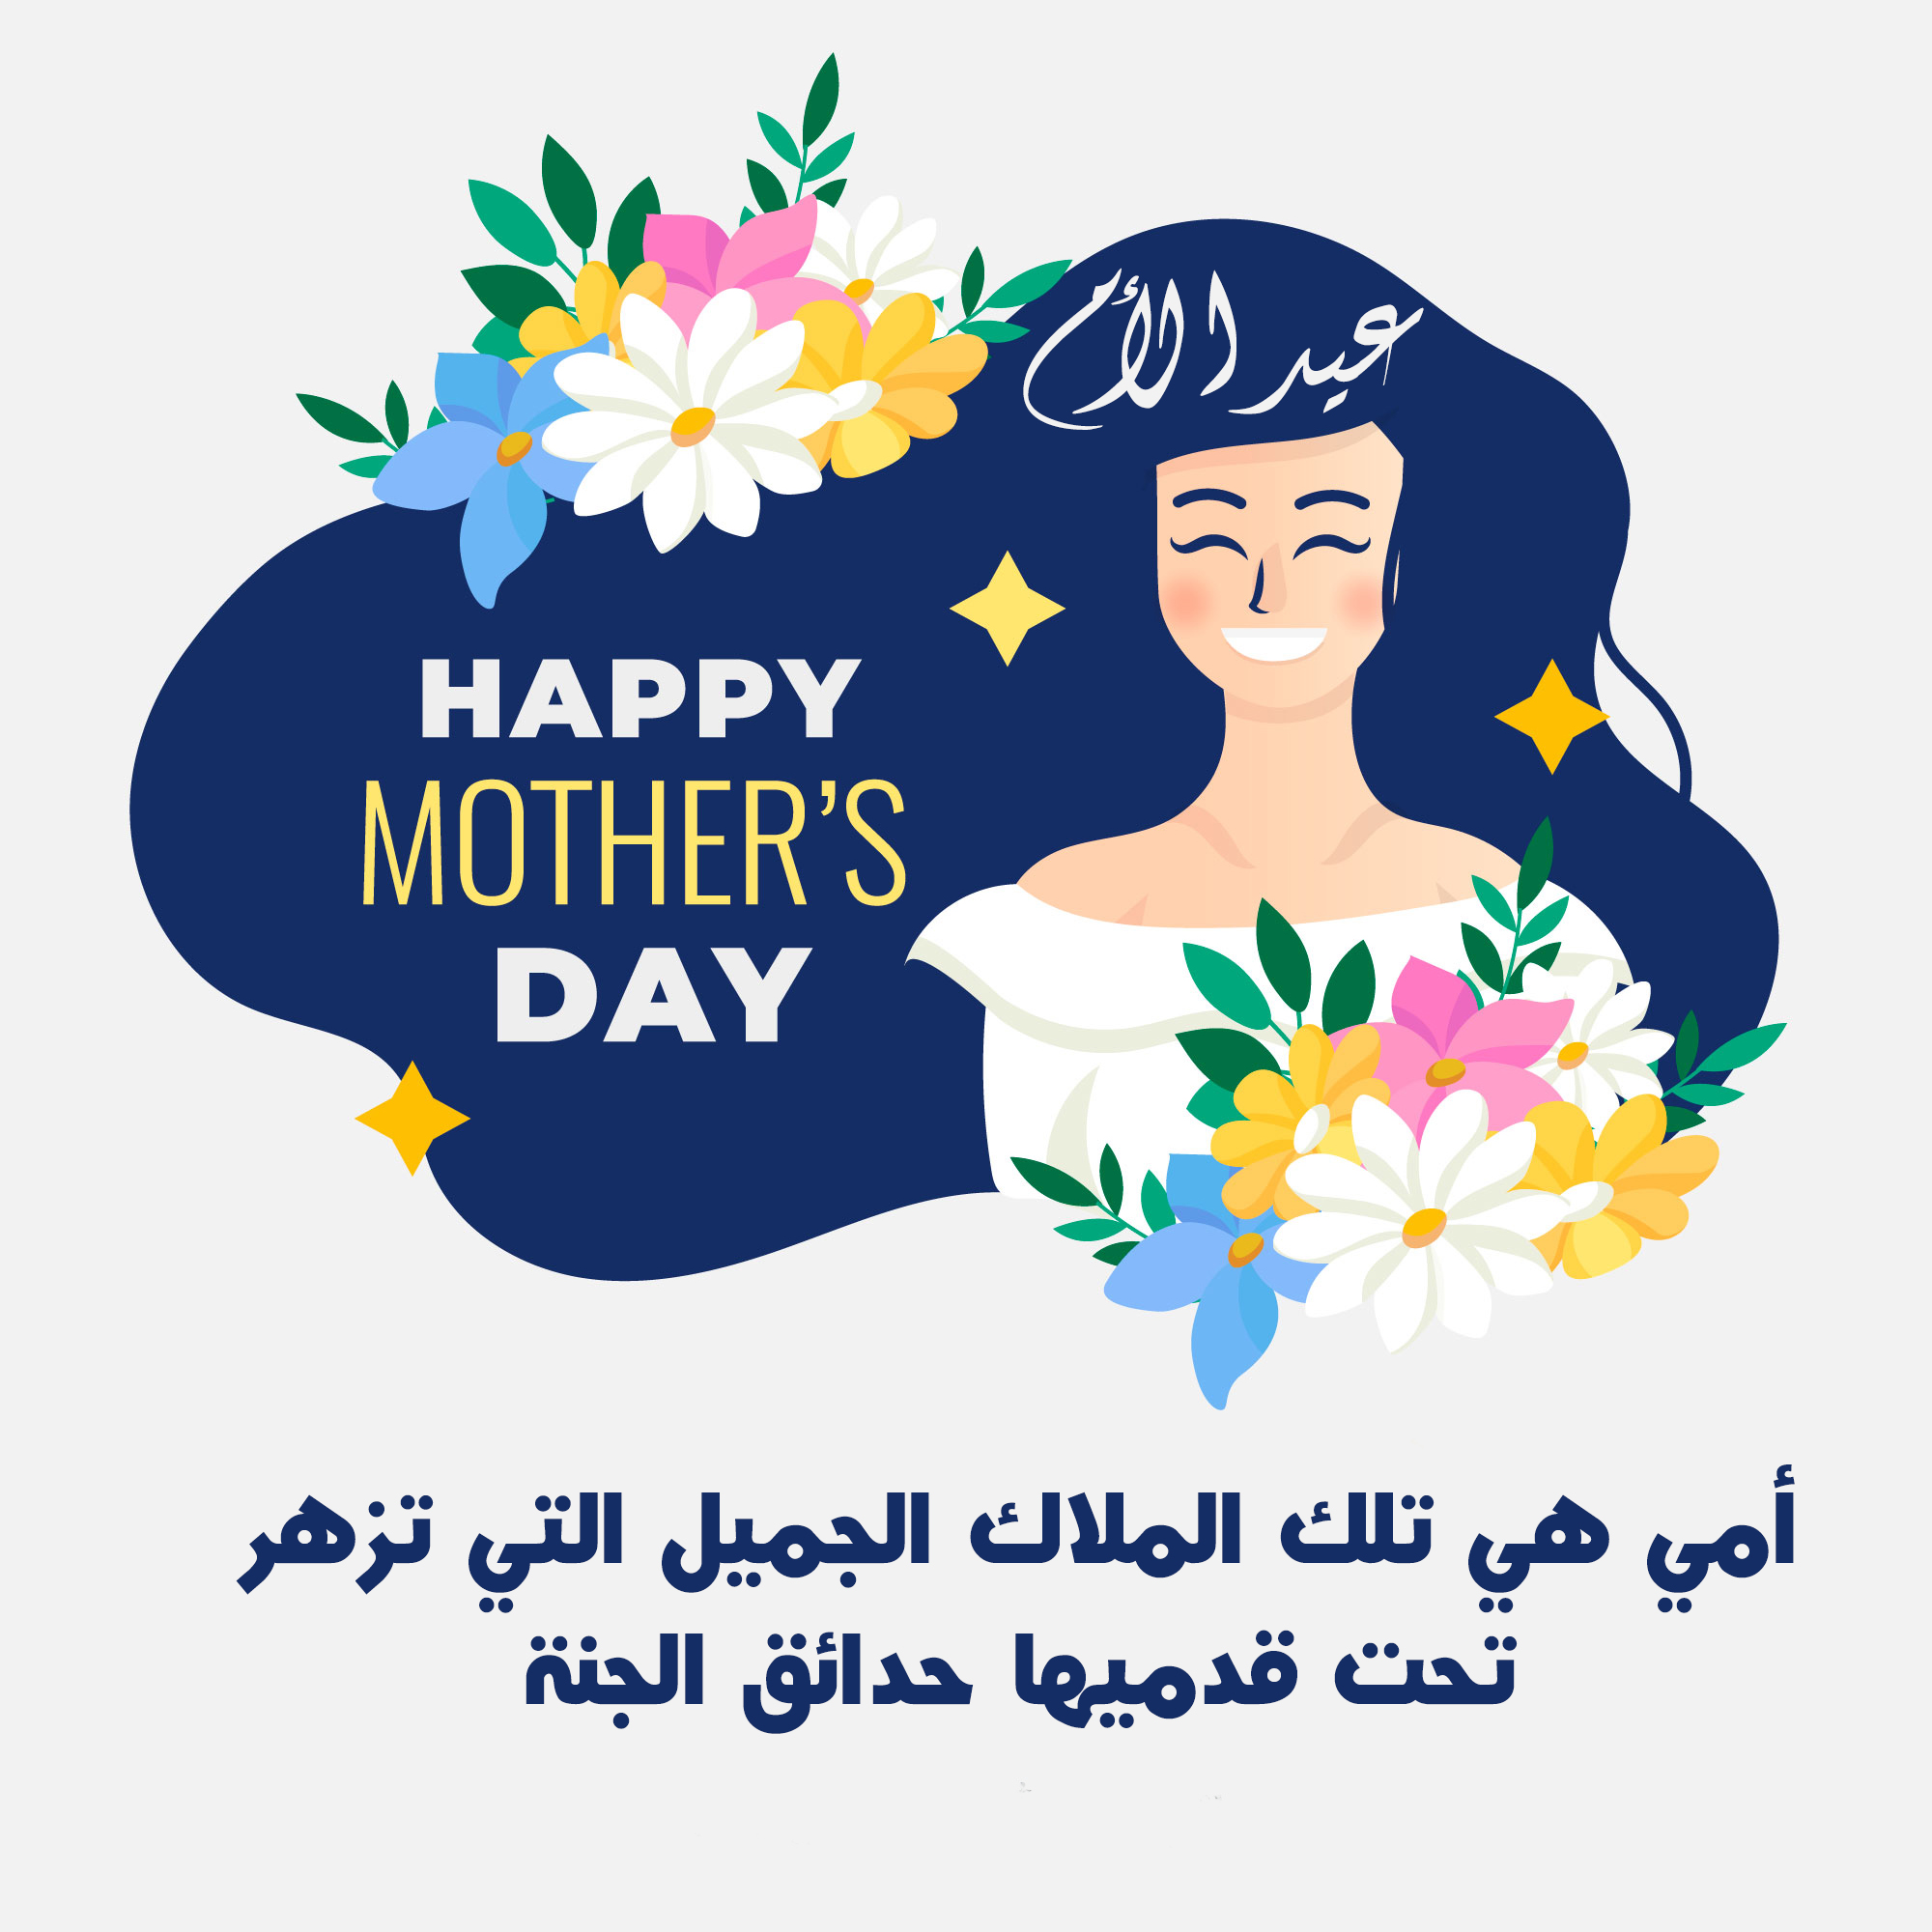 عيد الأم 2020 أشعار عن الأم يوم الأم رمزيات عن الأم 2